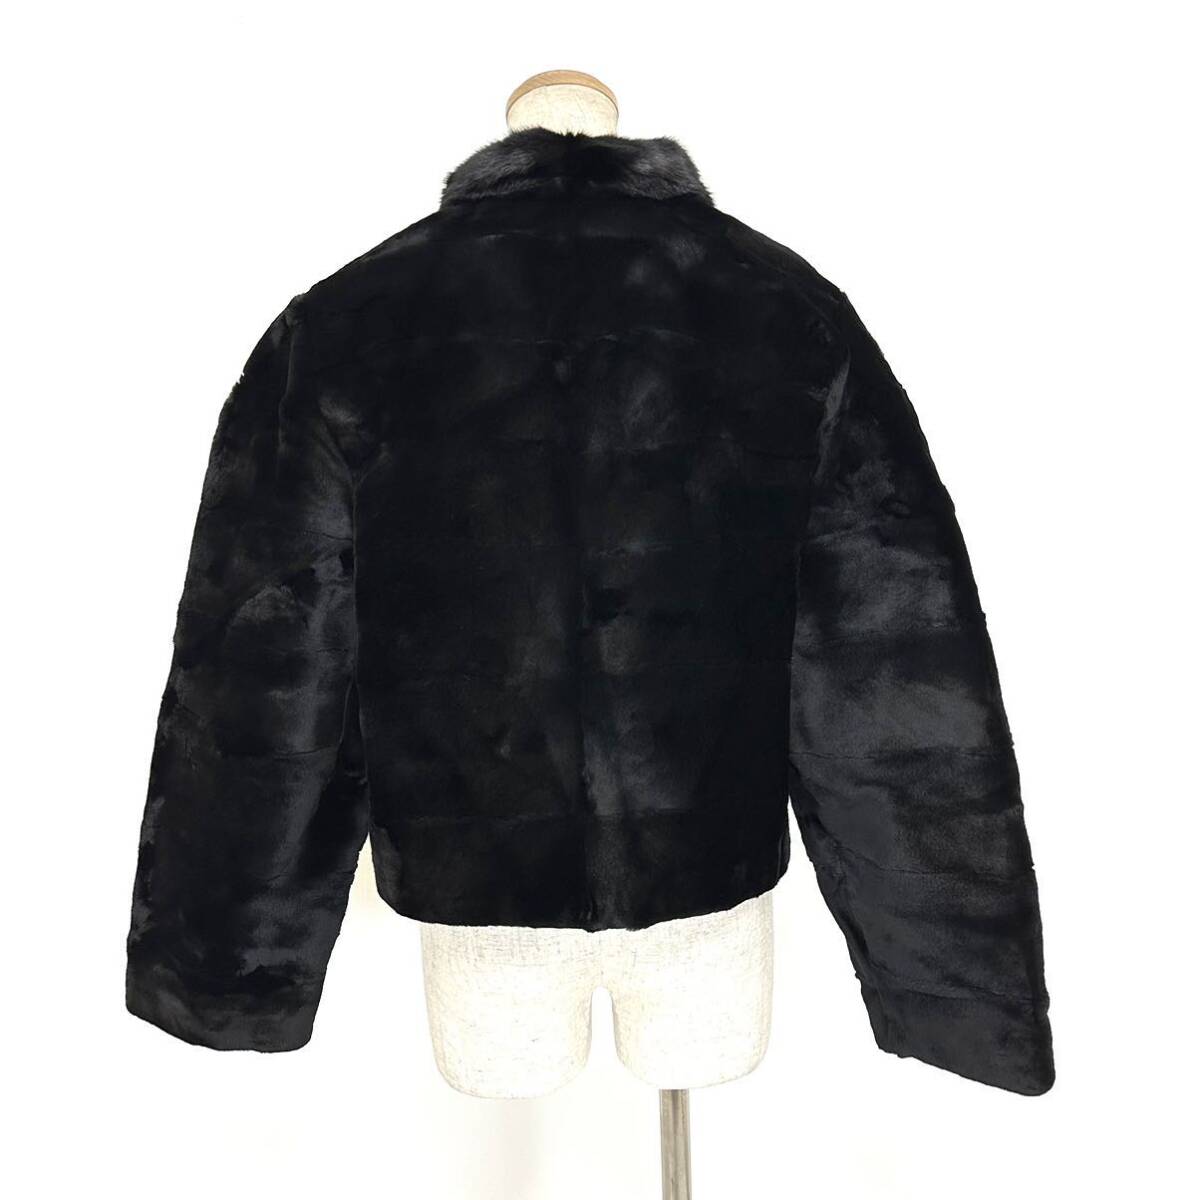 【貂商】h2662 SAGAFURS ブラックミンク/シェアードミンク デザインコート セミロング ミンクコート 貂皮 mink身丈 約50cm_画像3